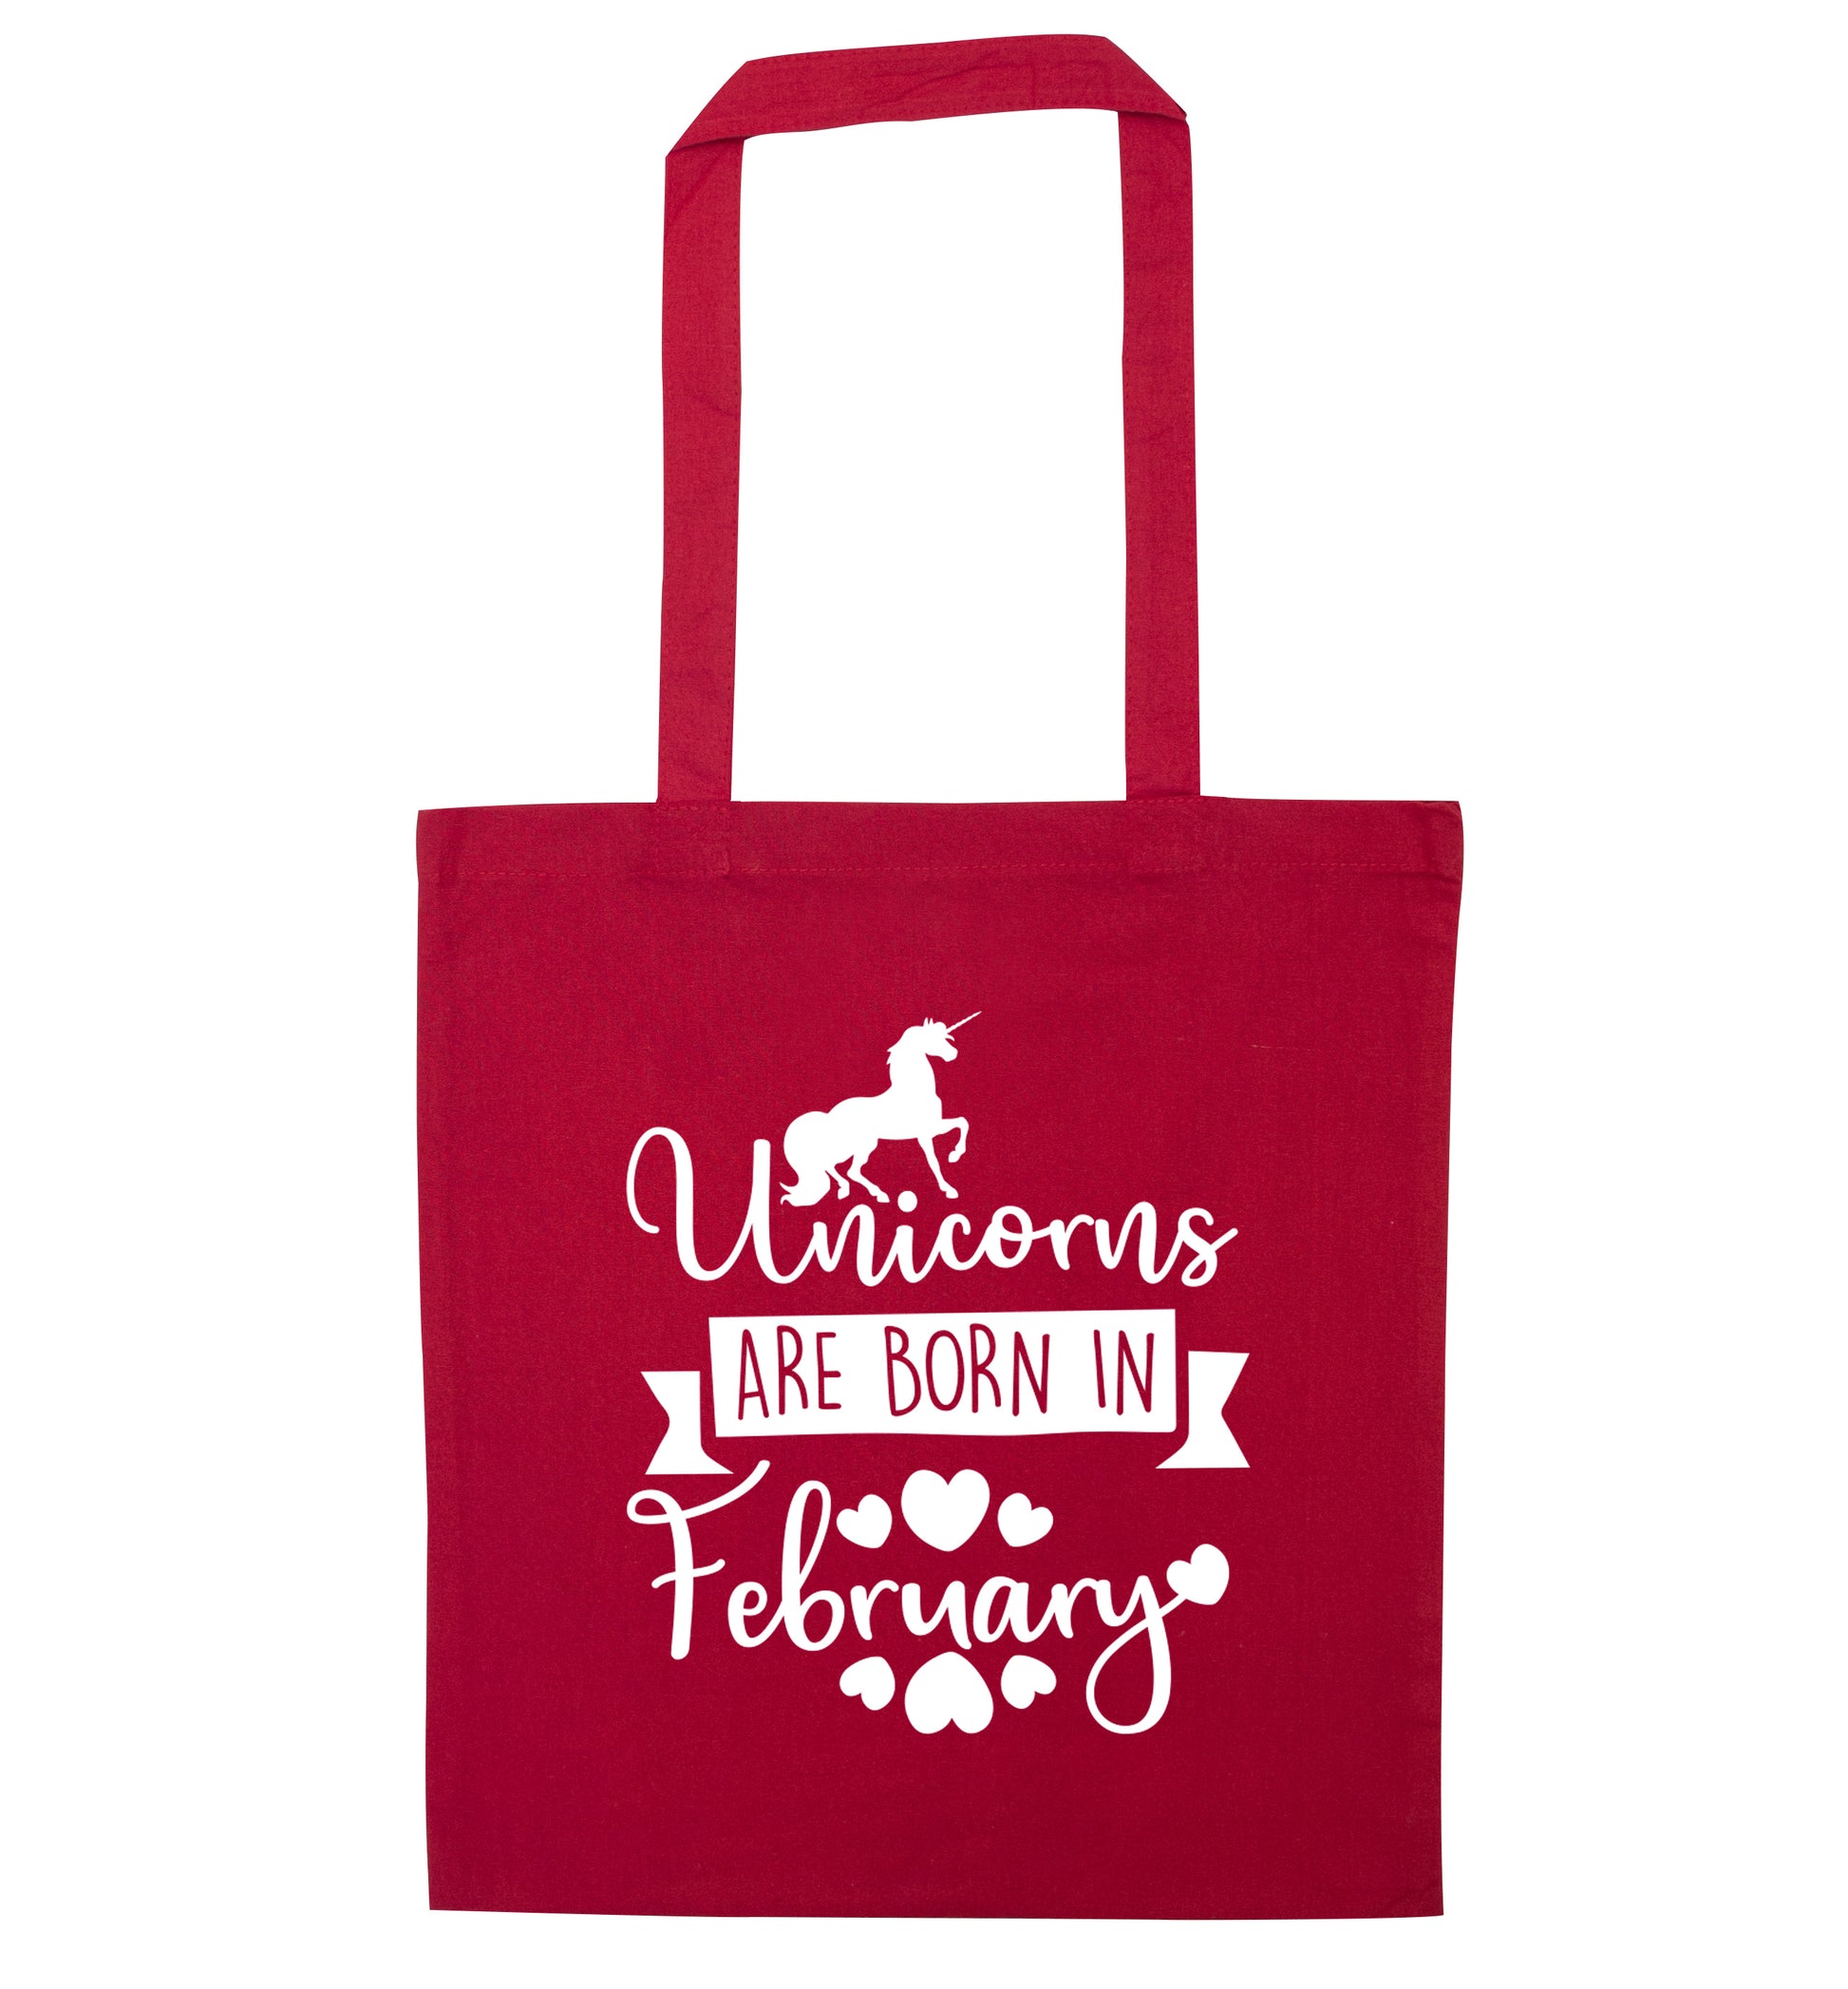 Unicorns are born in February red tote bag